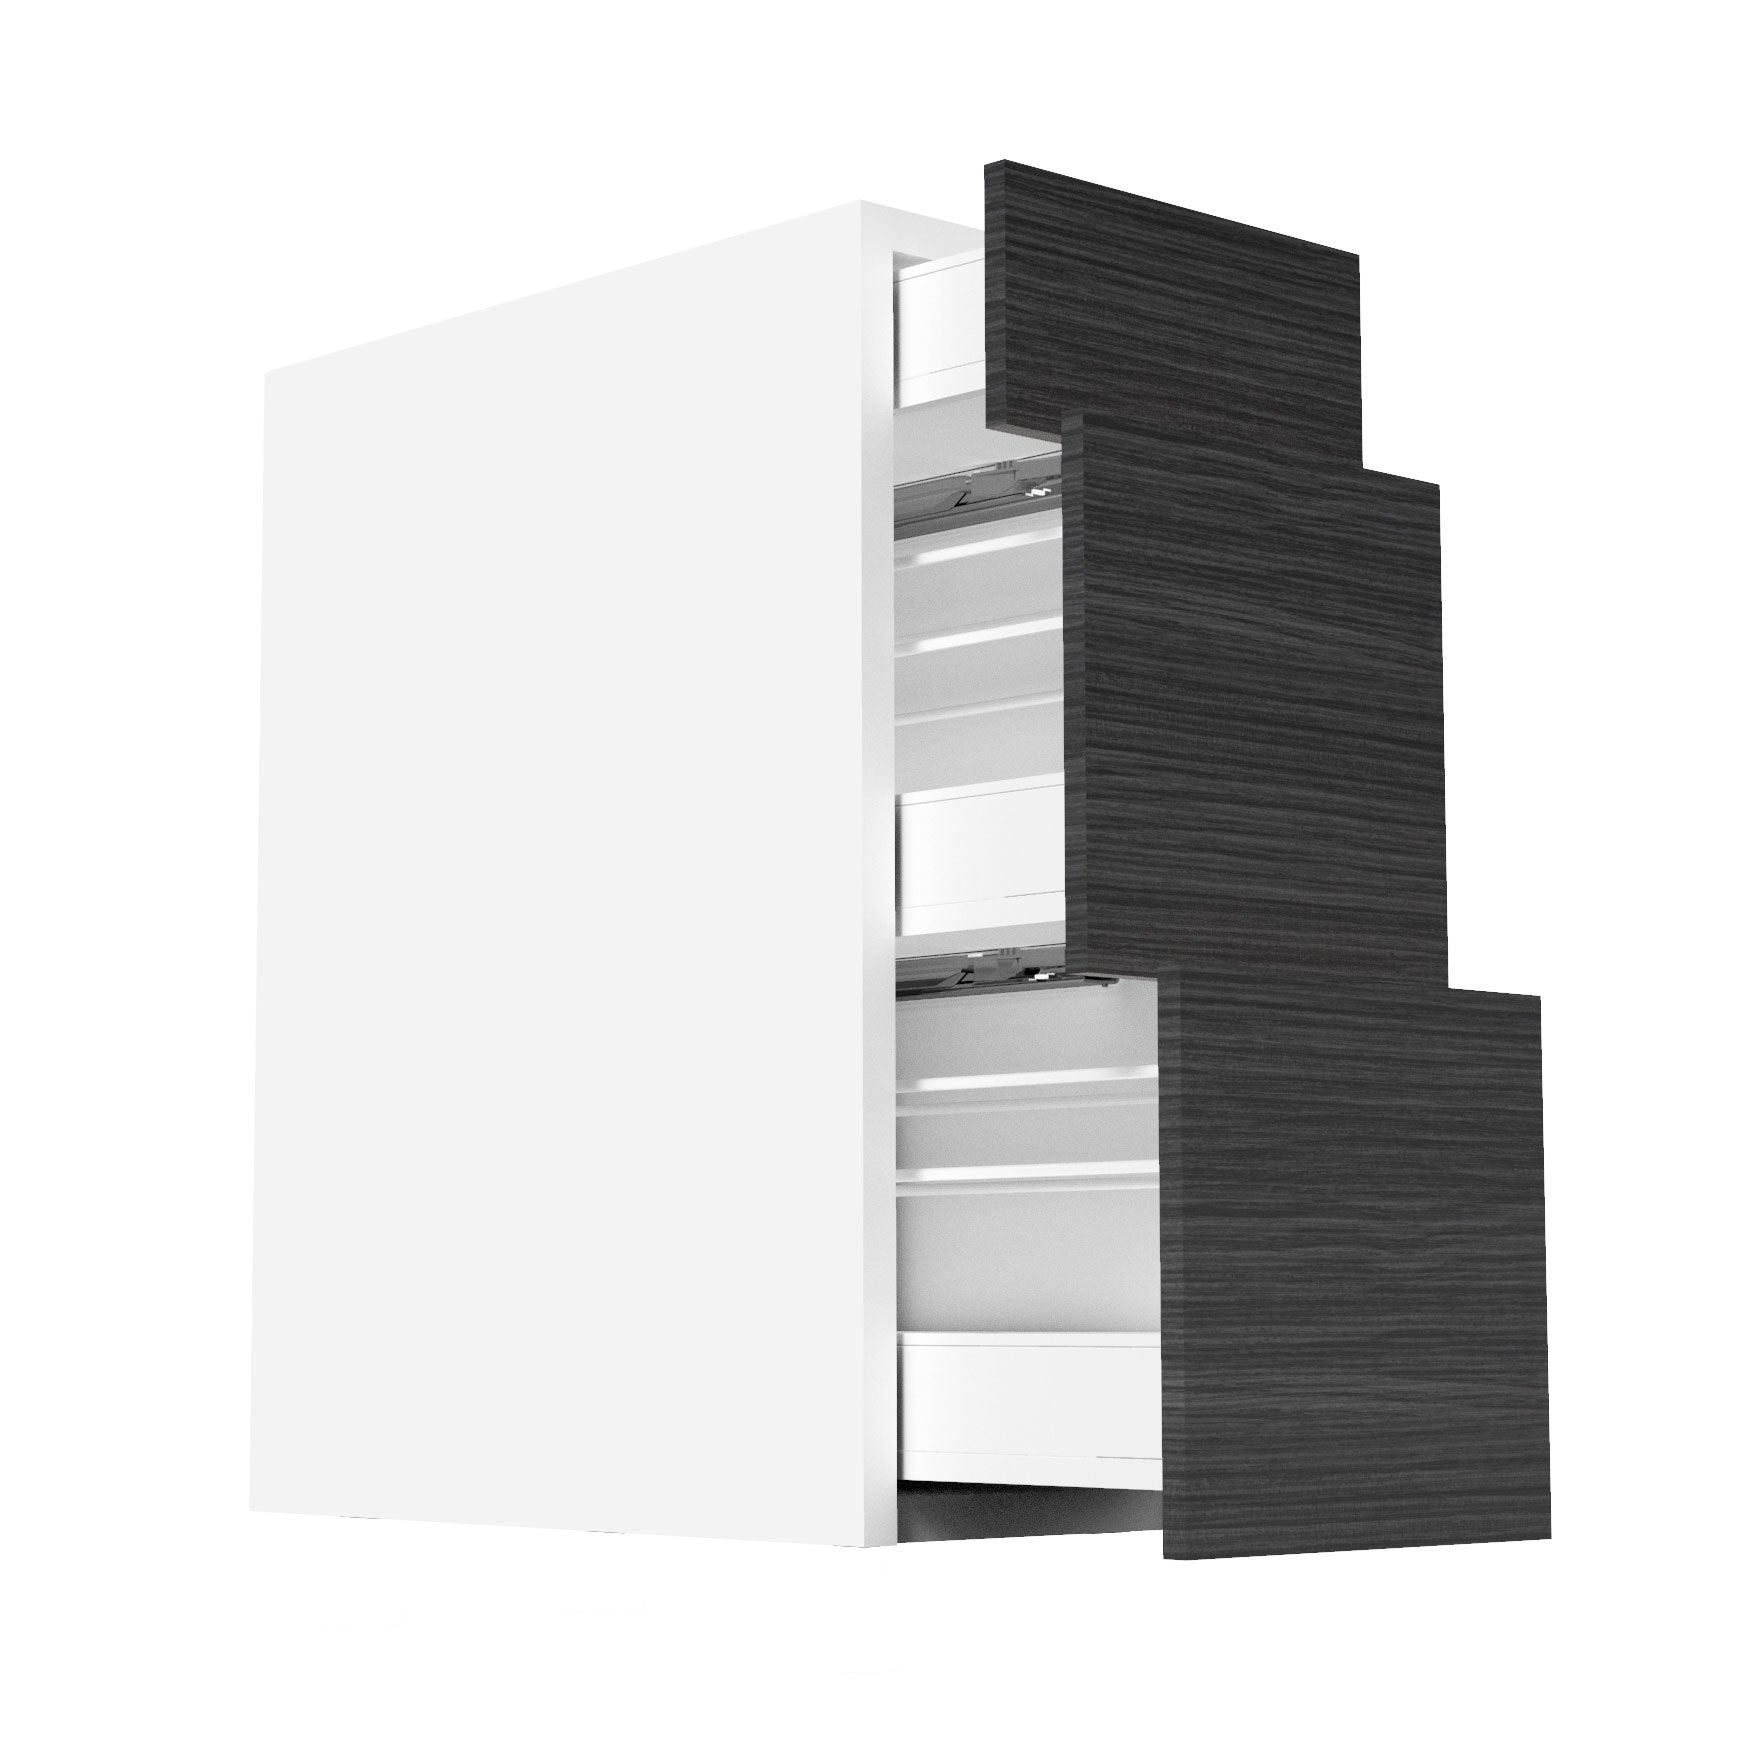 RTA - Dark Wood - Three Drawer Base Cabinets | 12"W x 30"H x 23.8"D